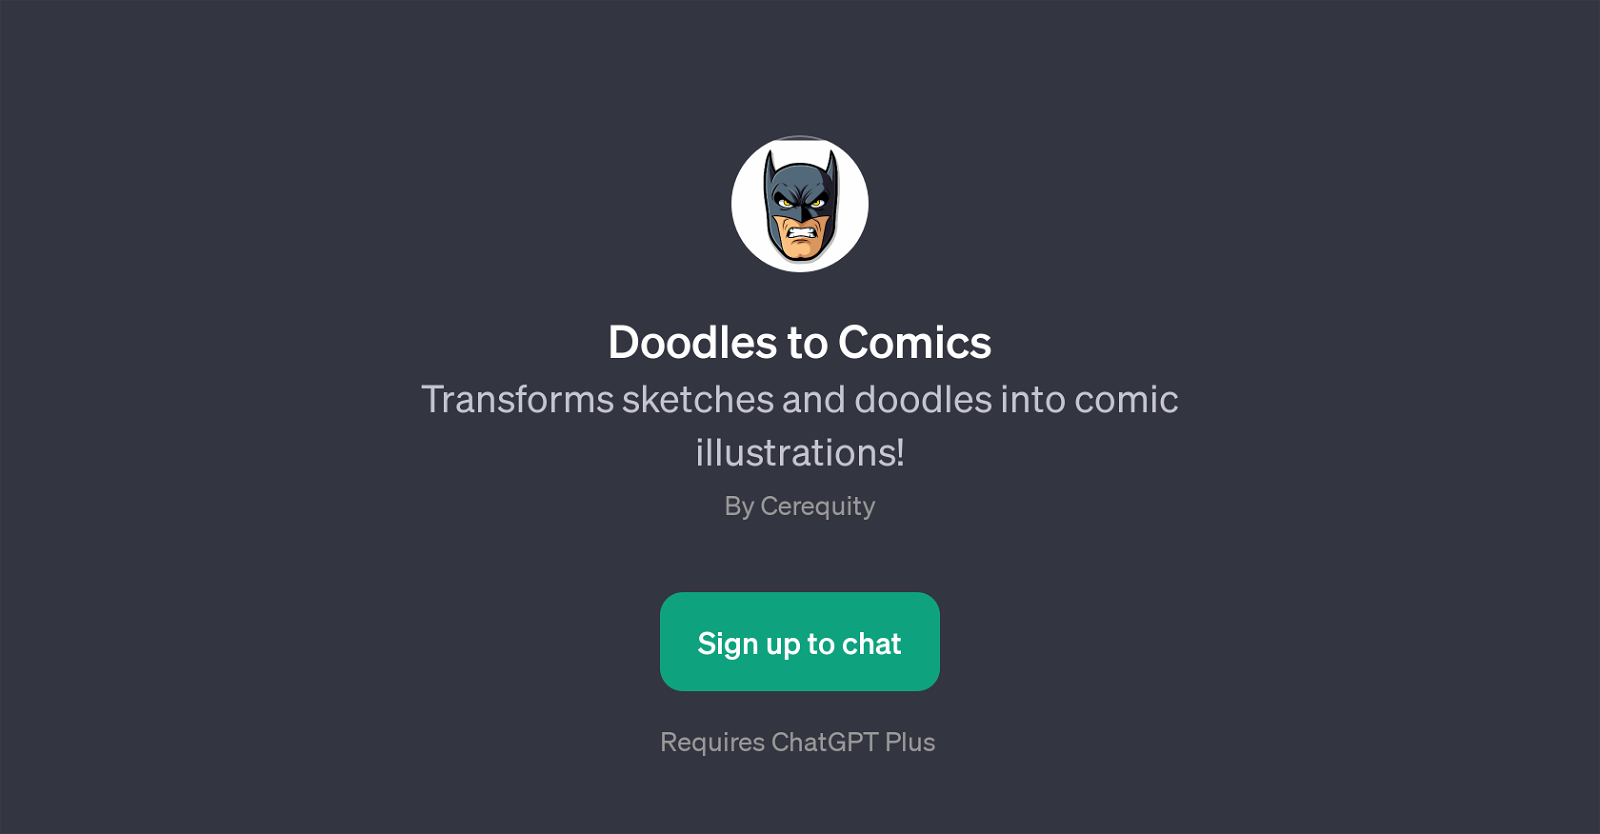 Doodles to Comics website